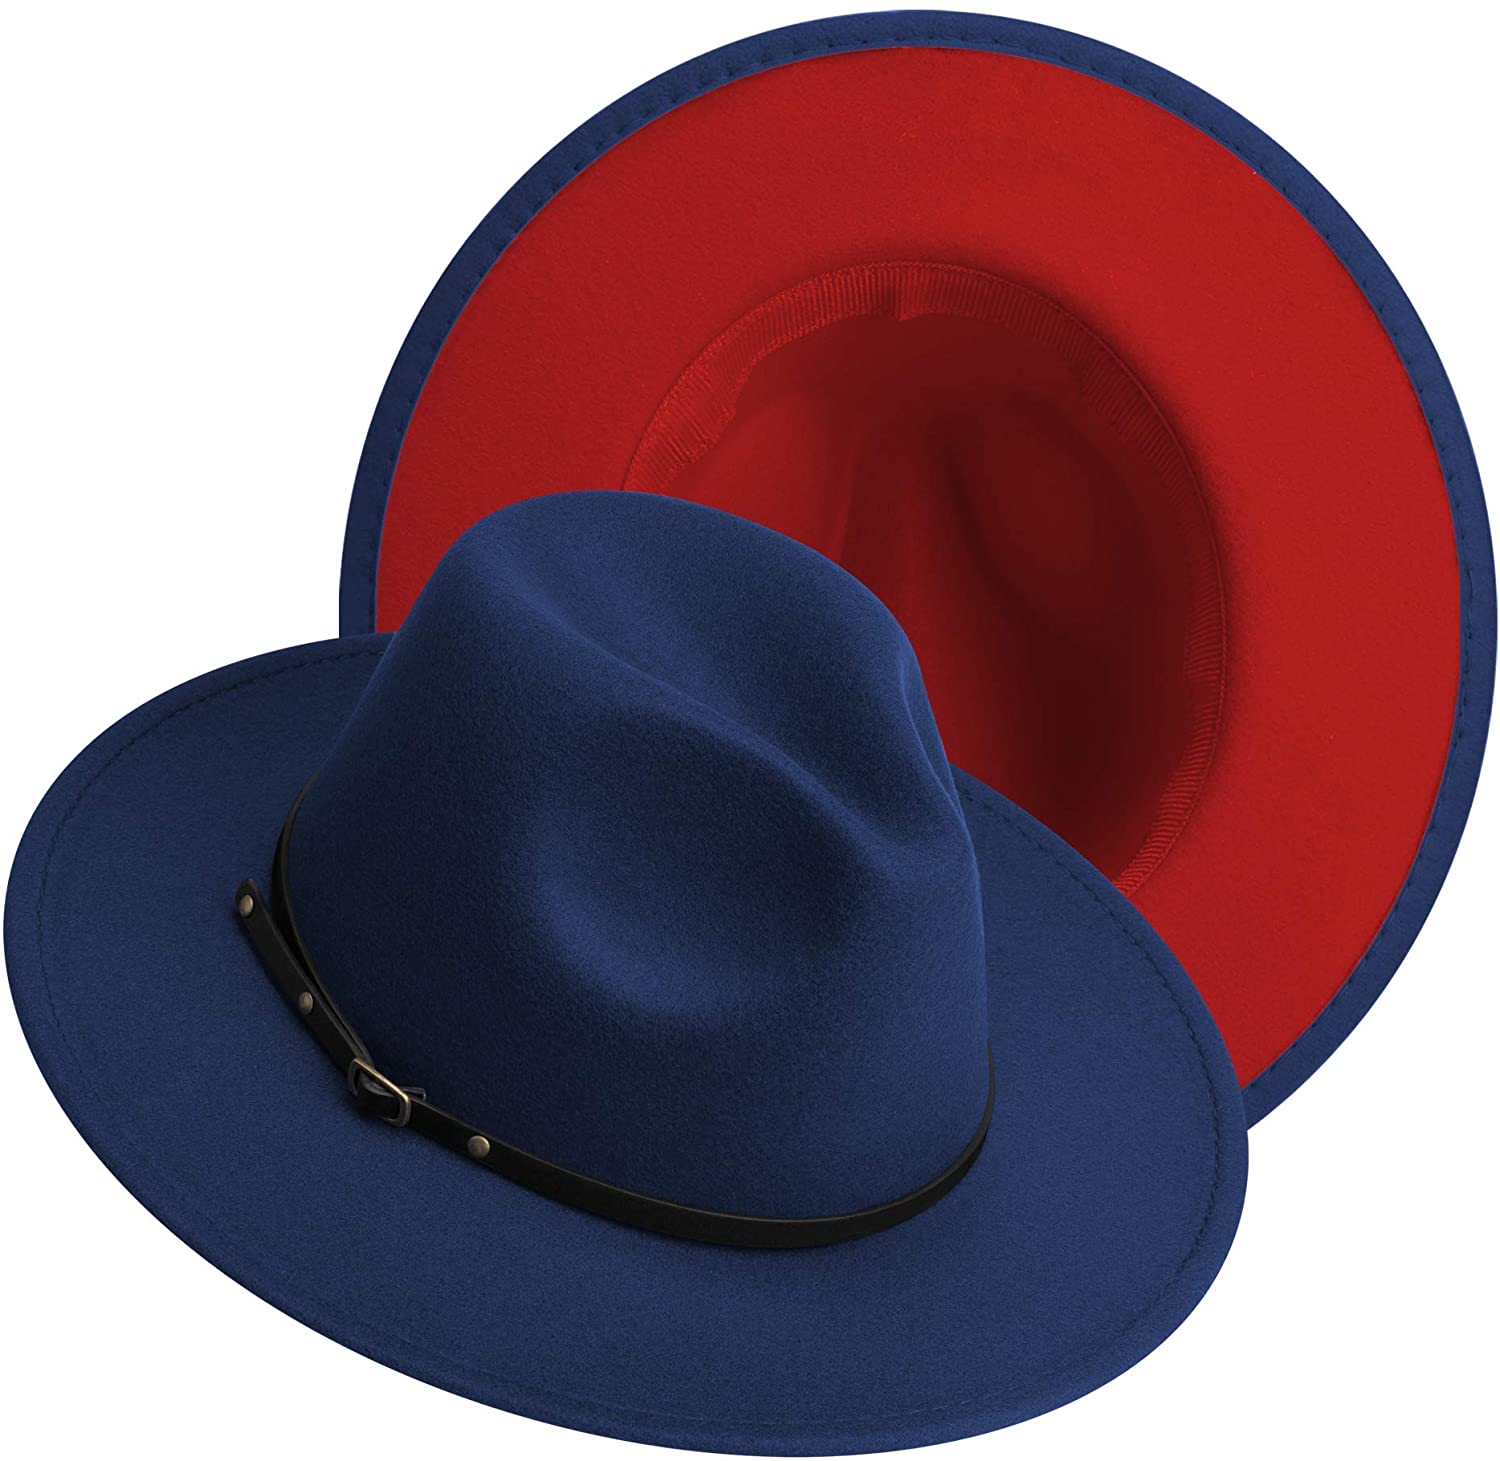 jingsha Womens & Mens Two Tone Wide Brim Fedora Hats Felt Panama Cap Casual Hats with Belt Buckle 